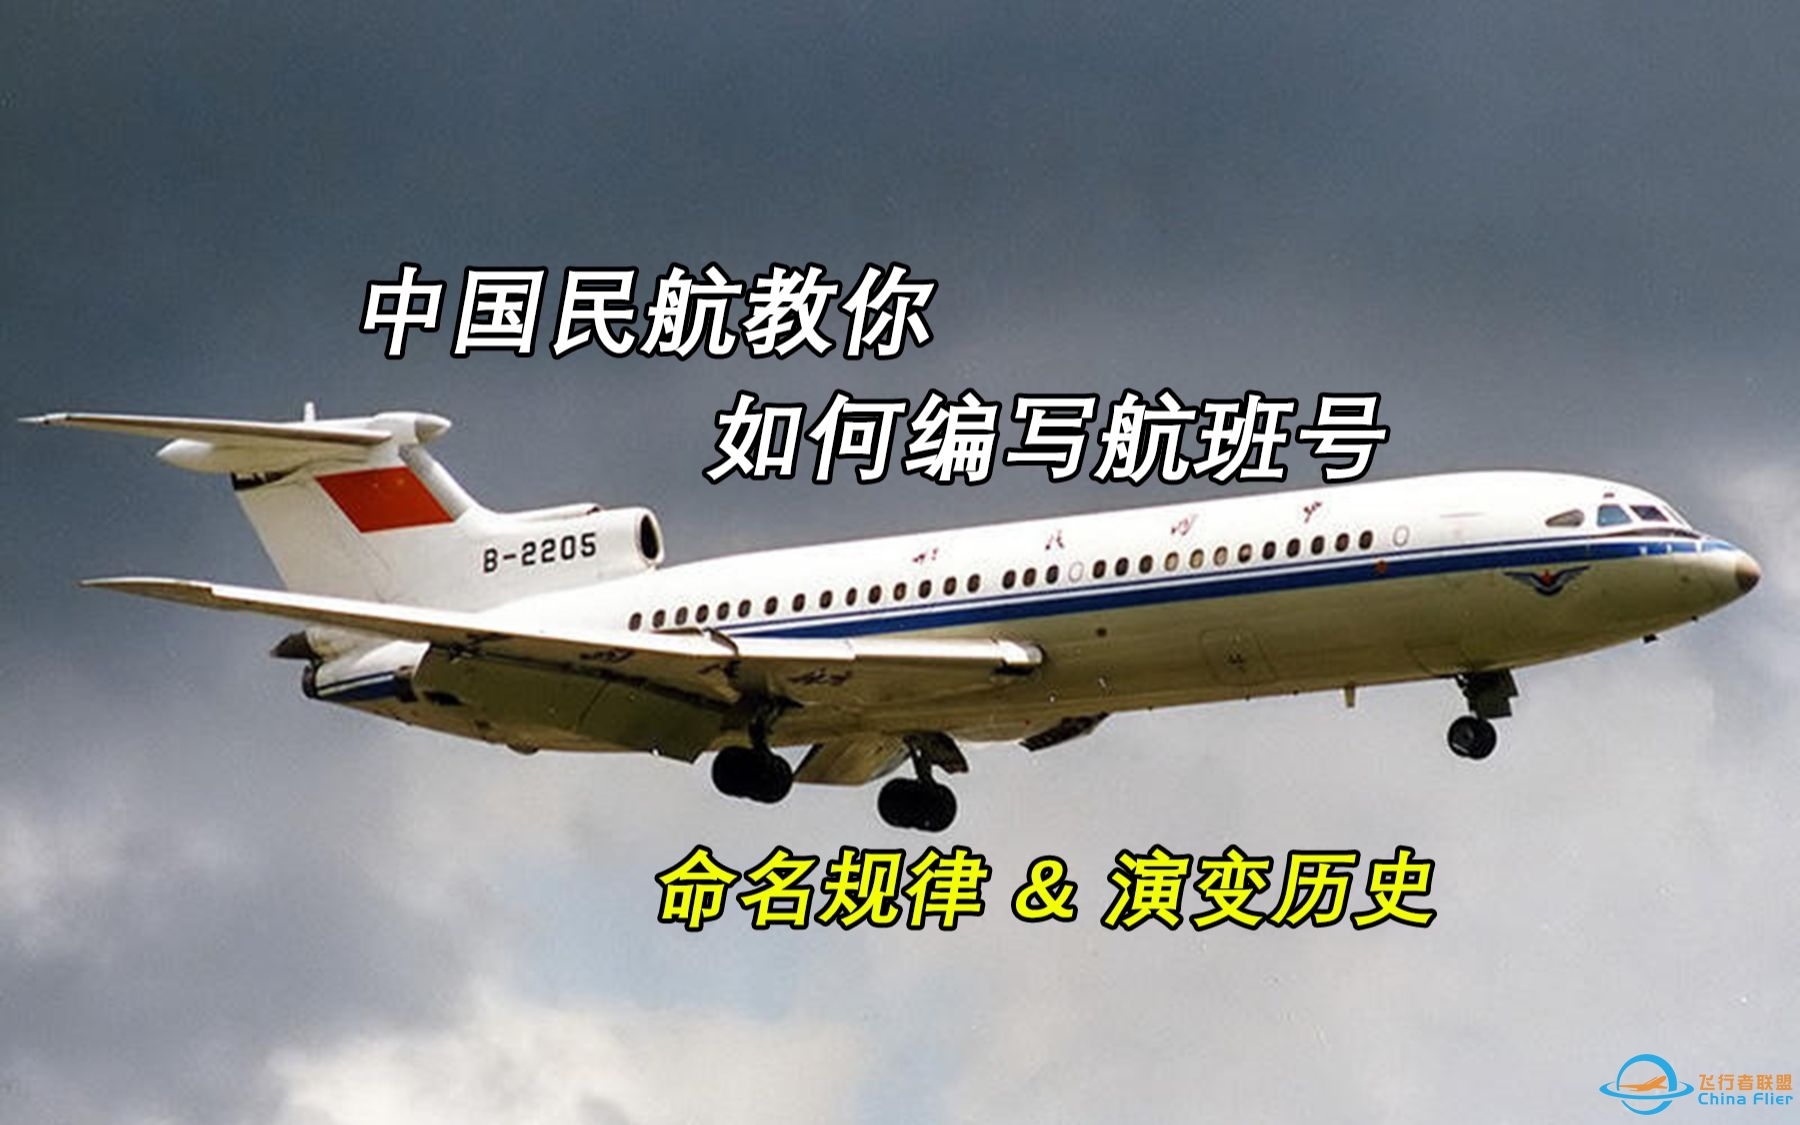 【科普向】中国民航如何为14亿人编写航班号？-9402 